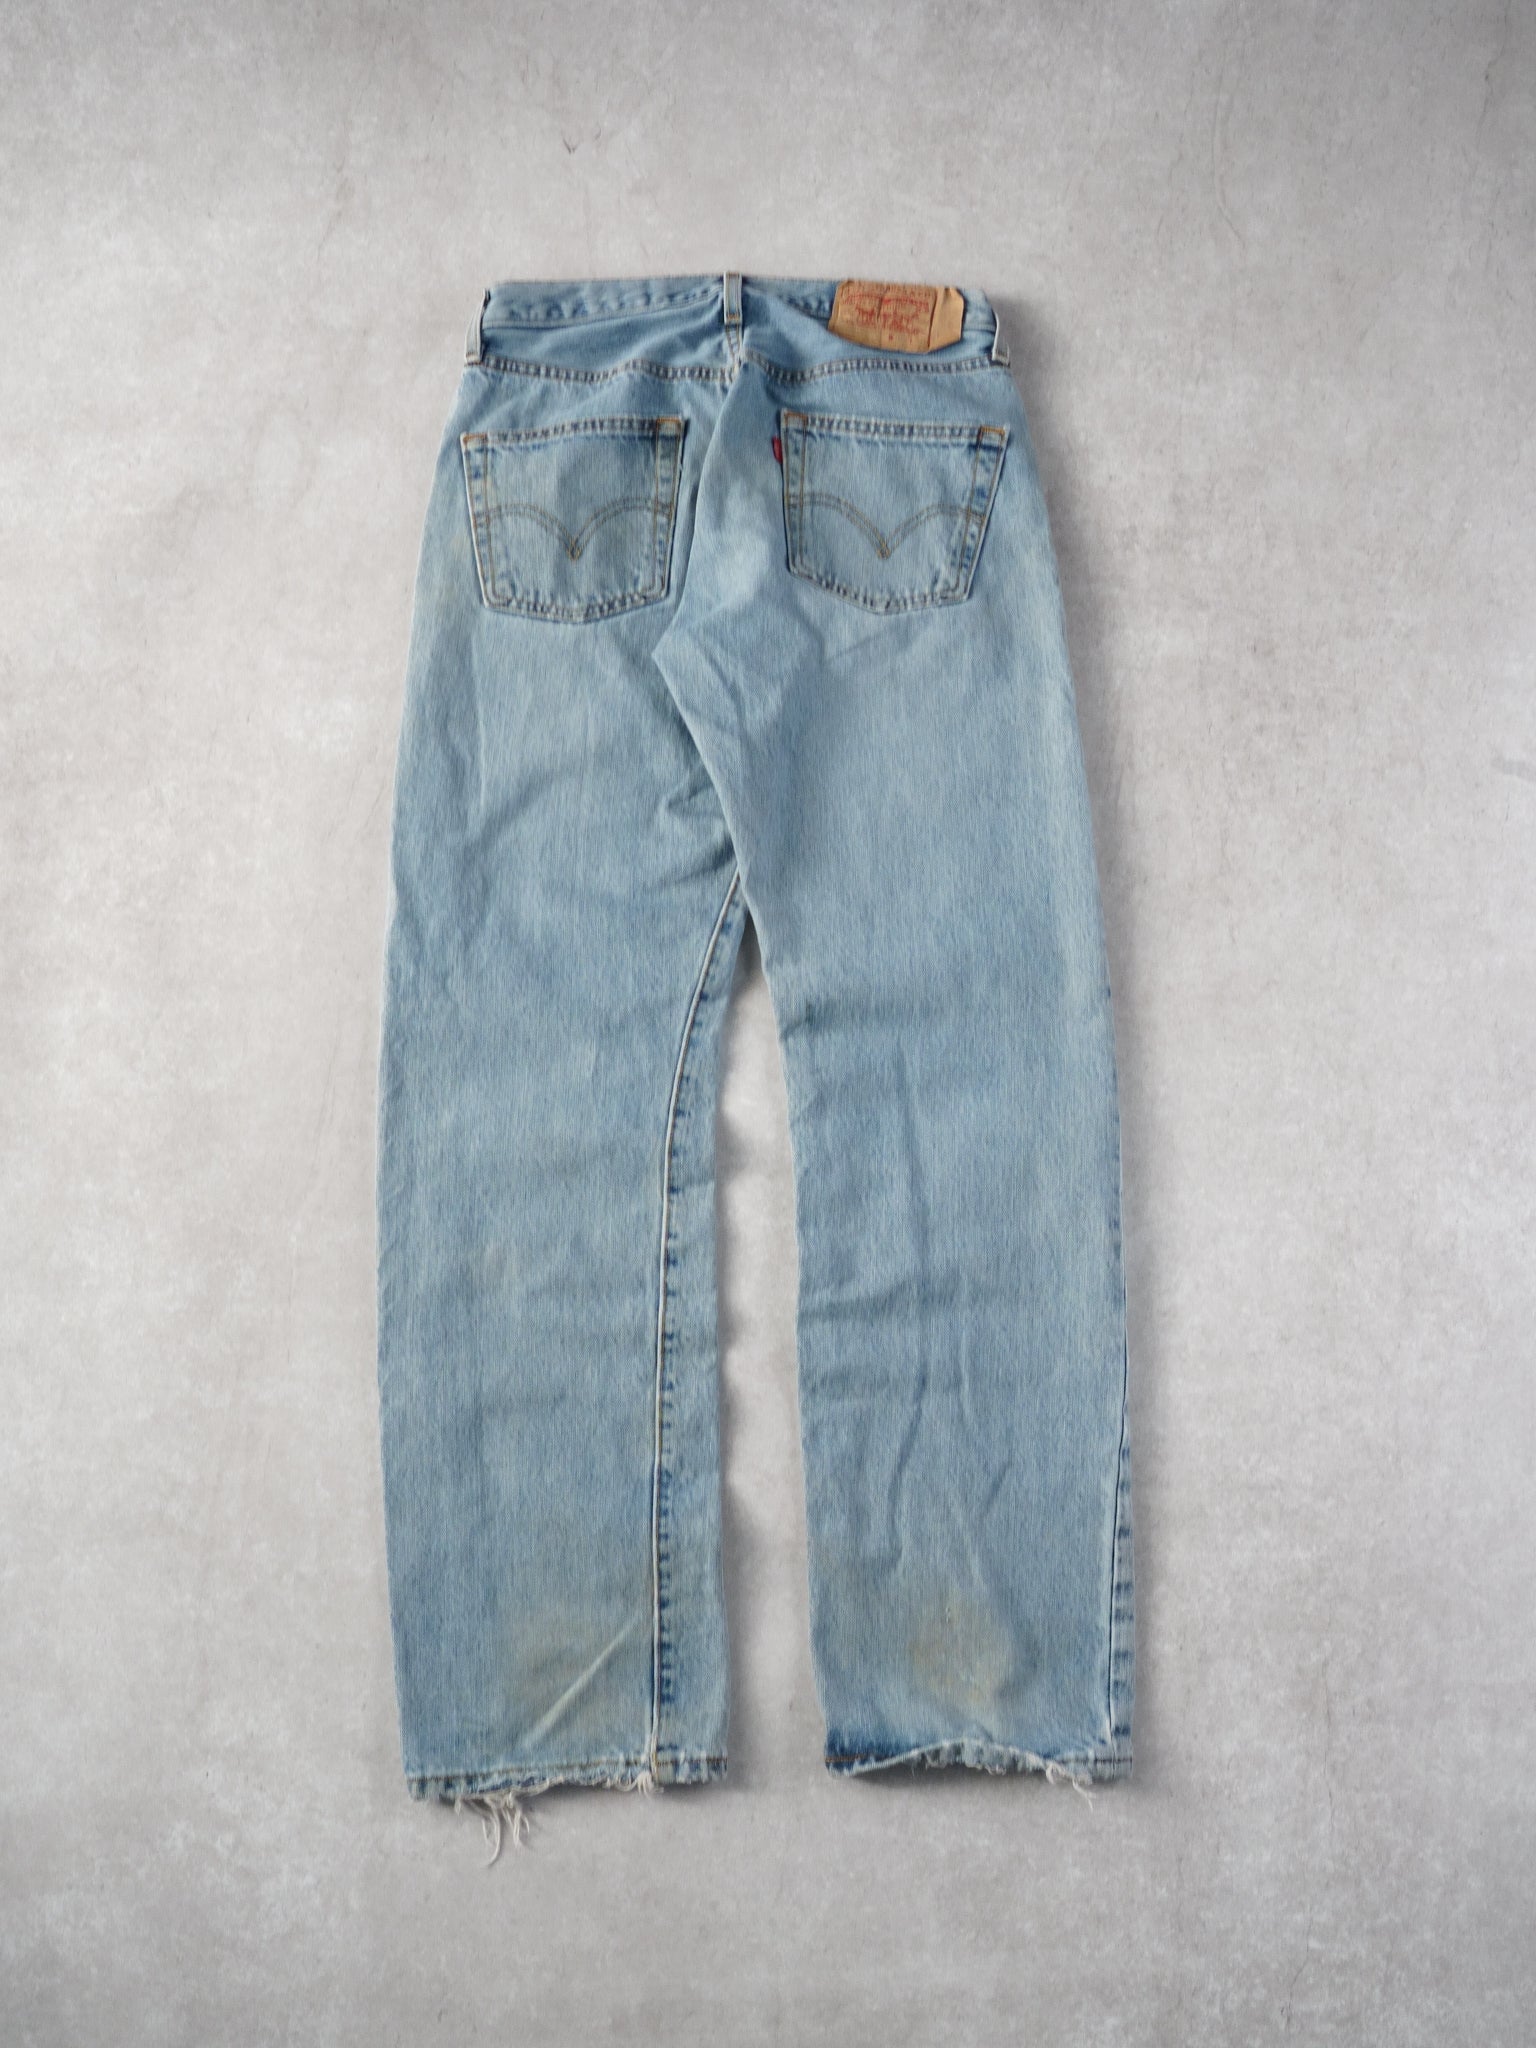 Vintage 90s Light Blue Levi's 501 Denim Jeans (30x30)